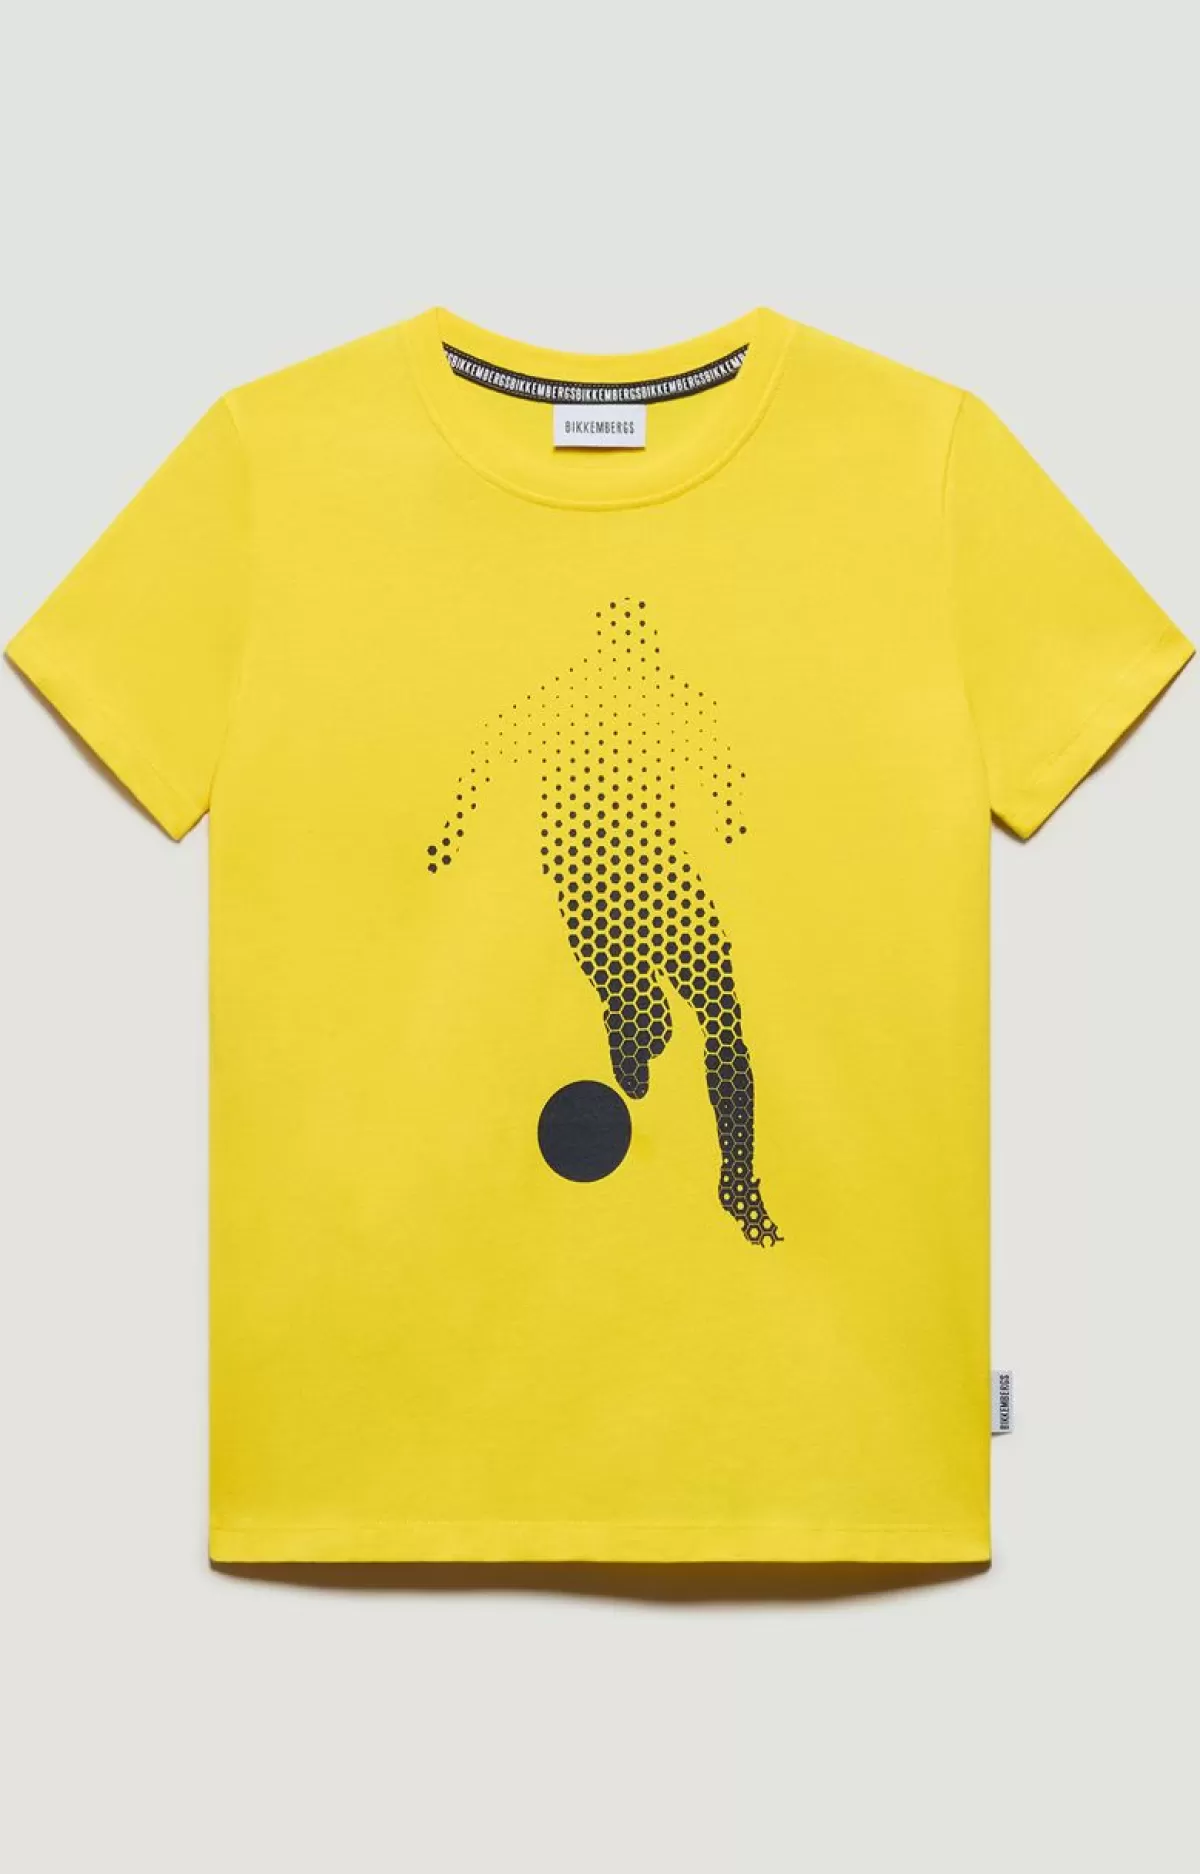 Bikkembergs Boys' T-Shirt - Soccer Print Navy Sale